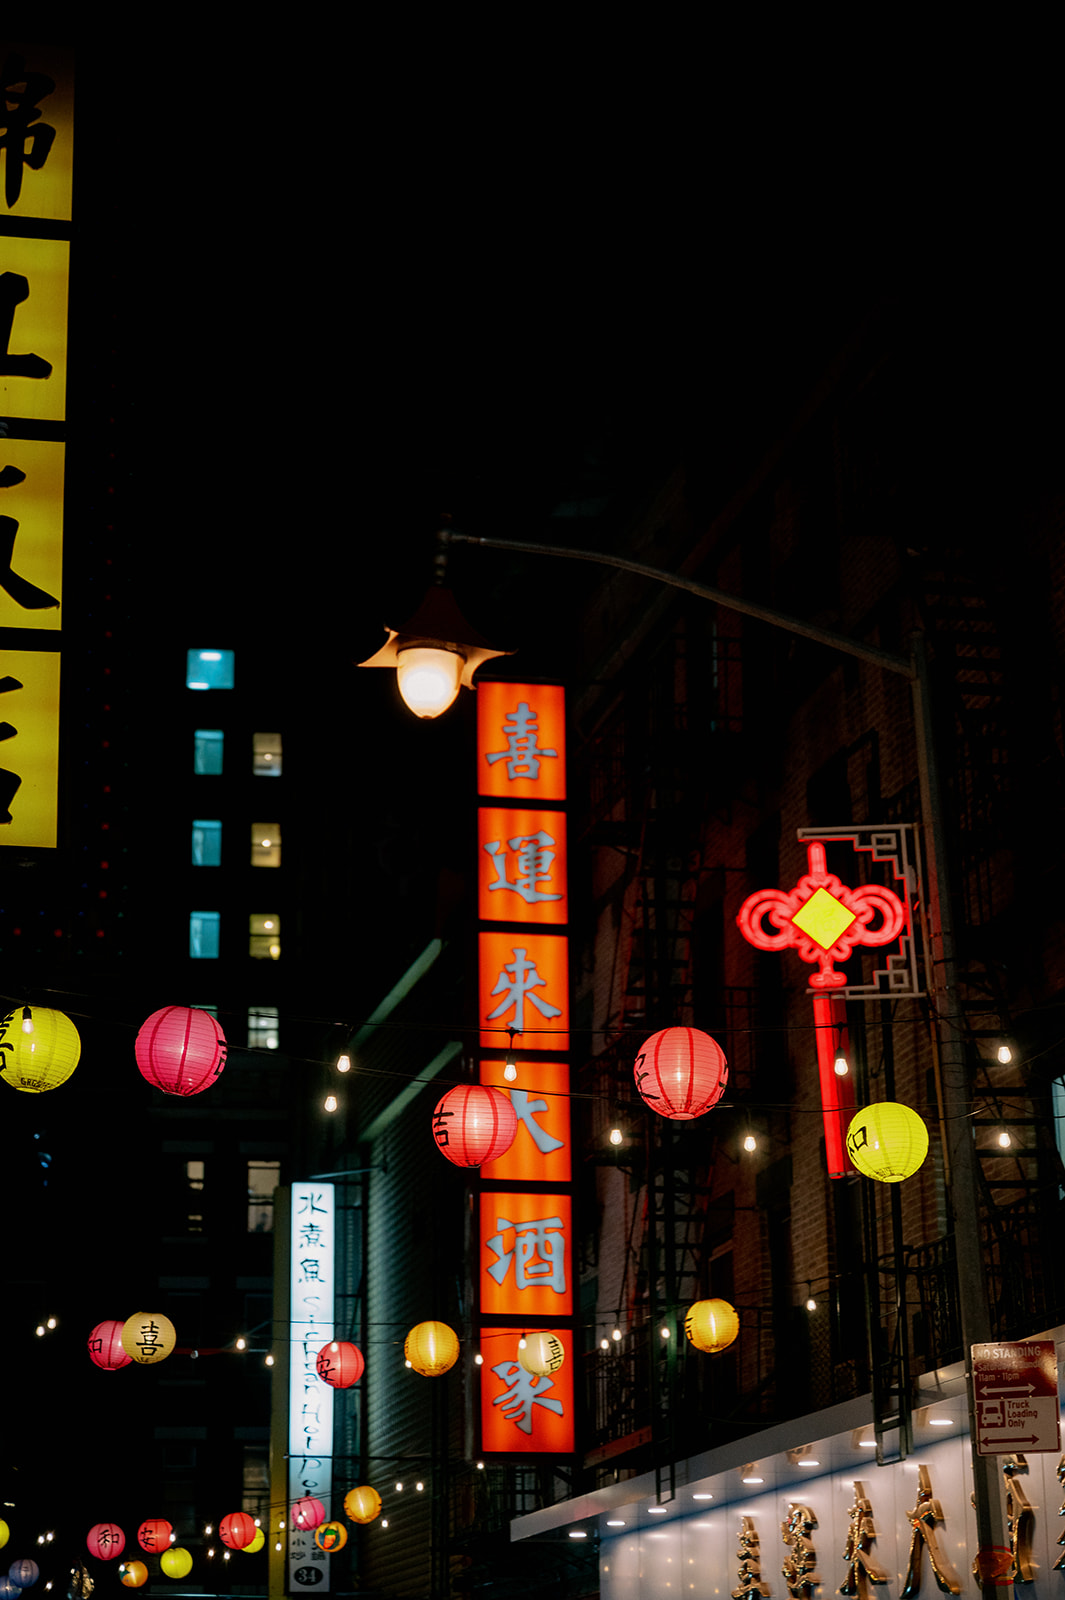 Nighttime in Chinatown, New York City.